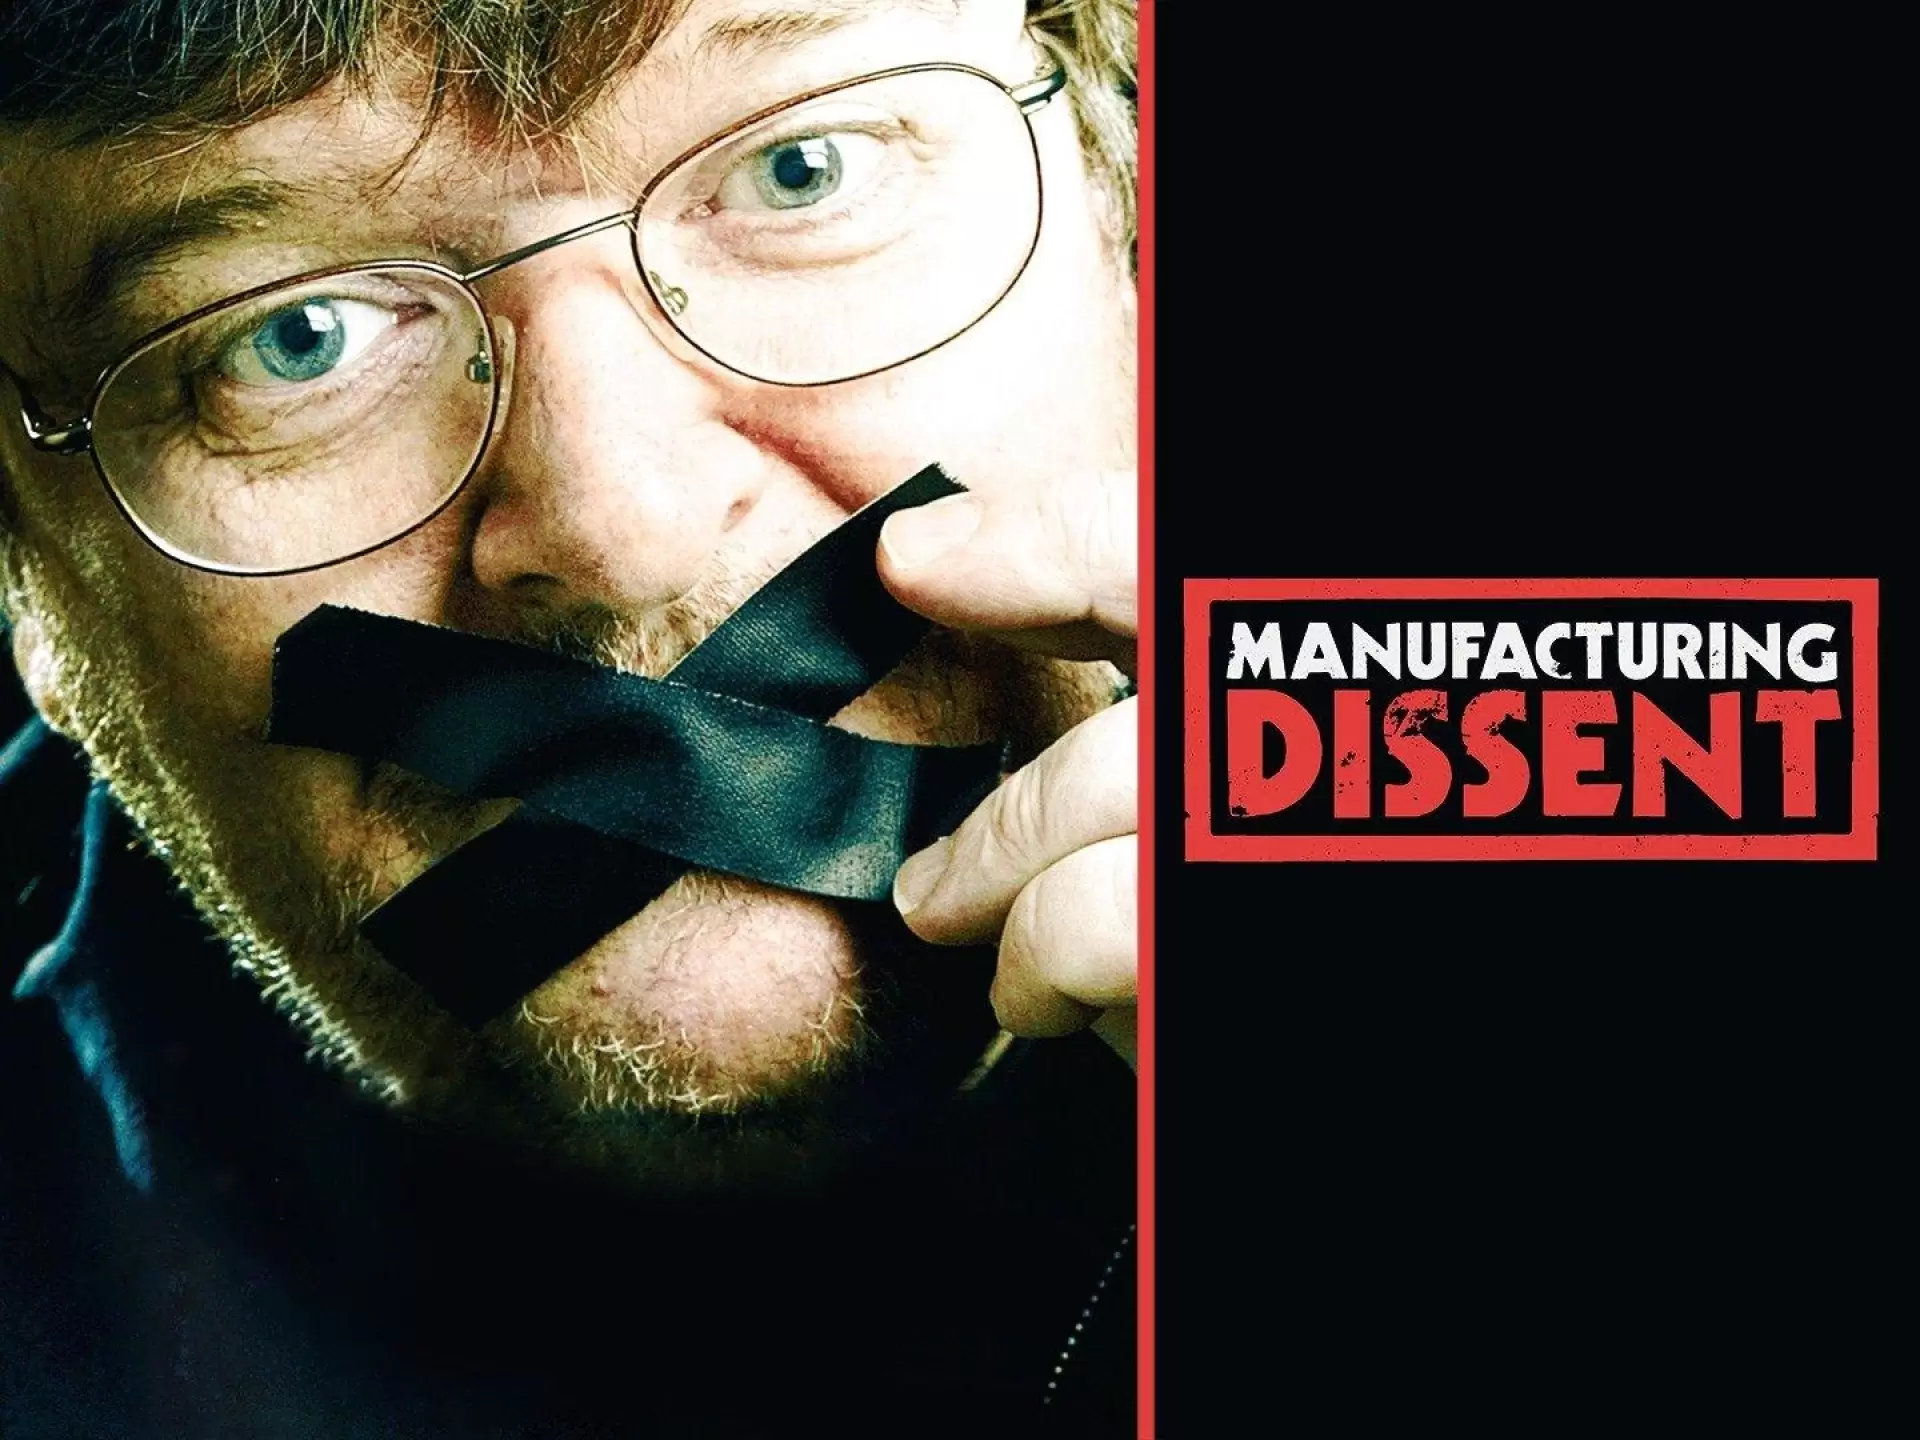 دانلود مستند Manufacturing Dissent – Michael Moore auf der Spur 2007 (تولید مخالف - مایکل مور در مسیر)